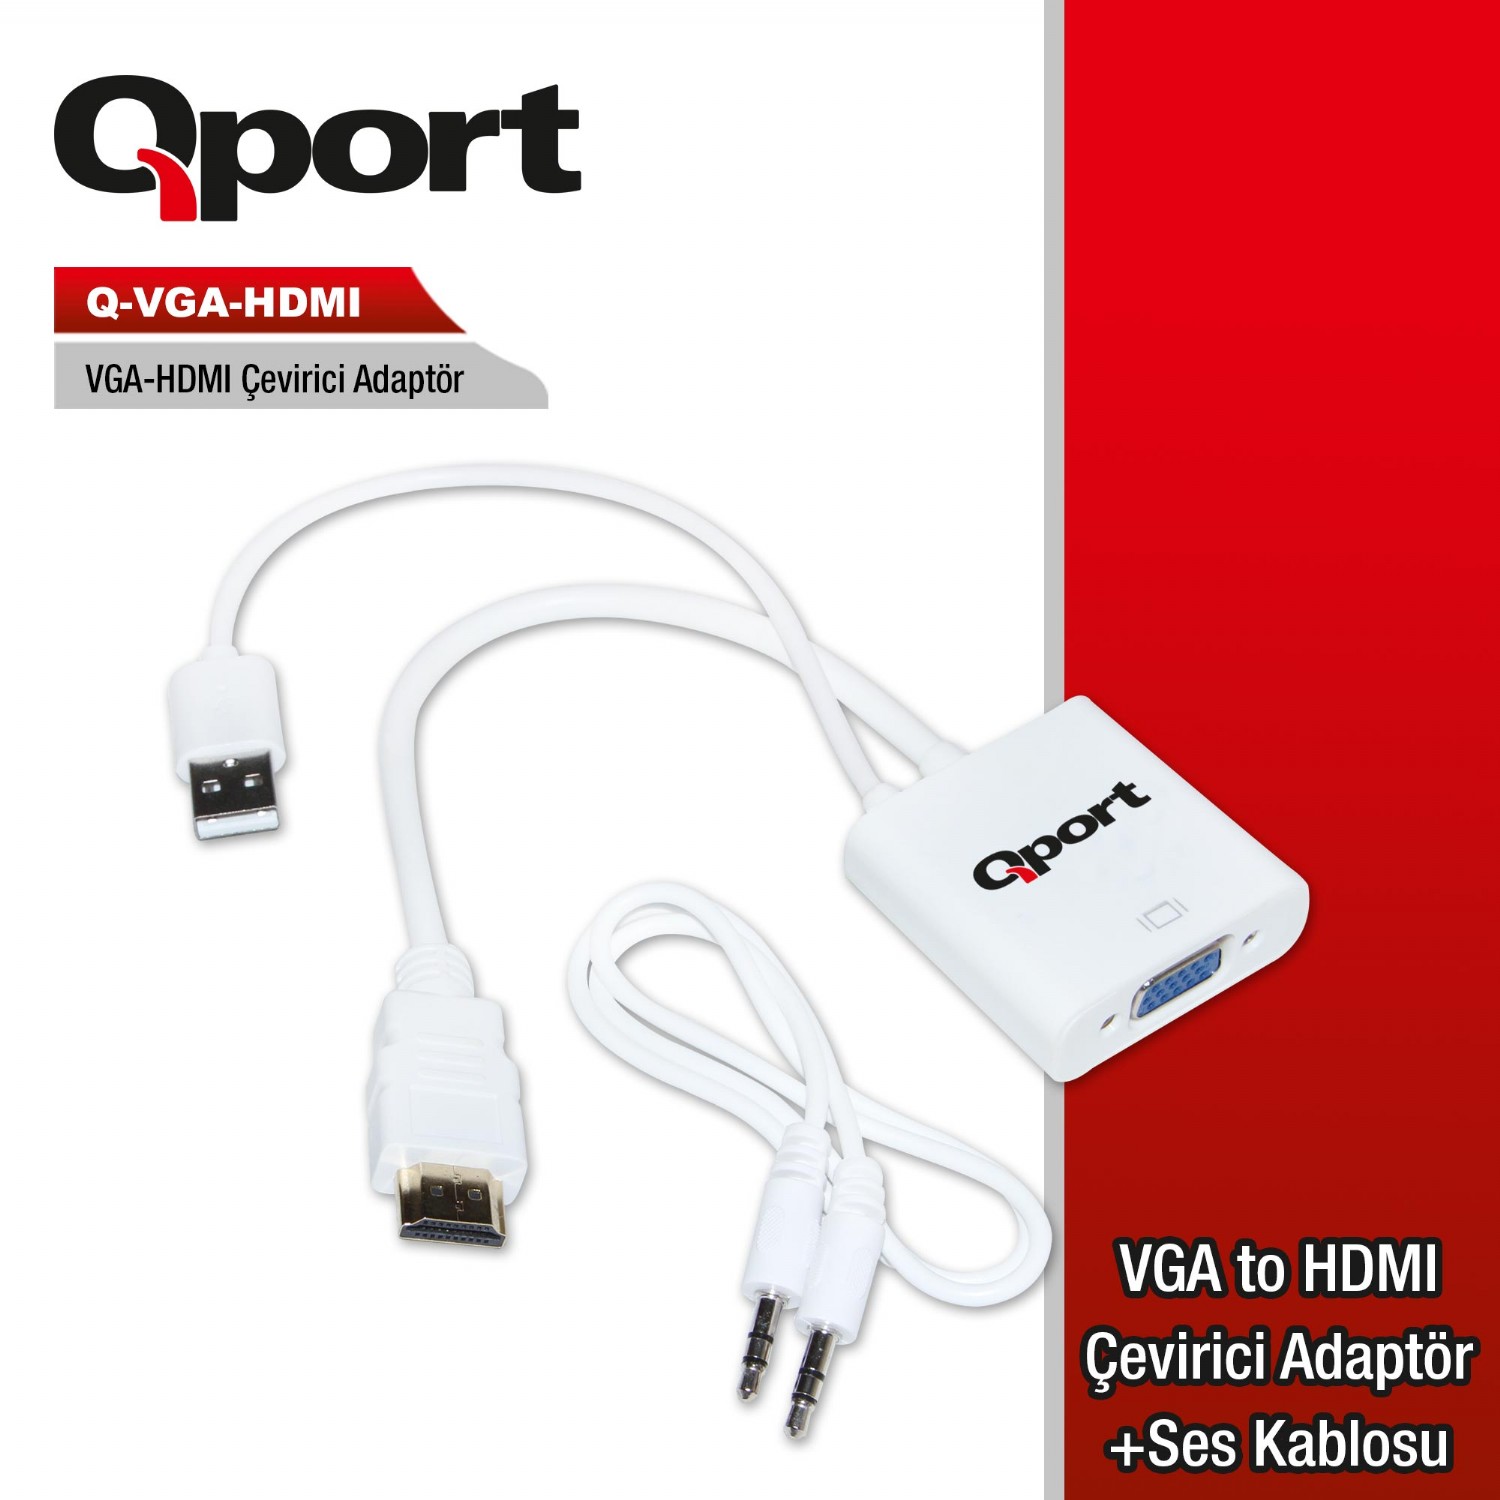 Q-VGA-HDMI